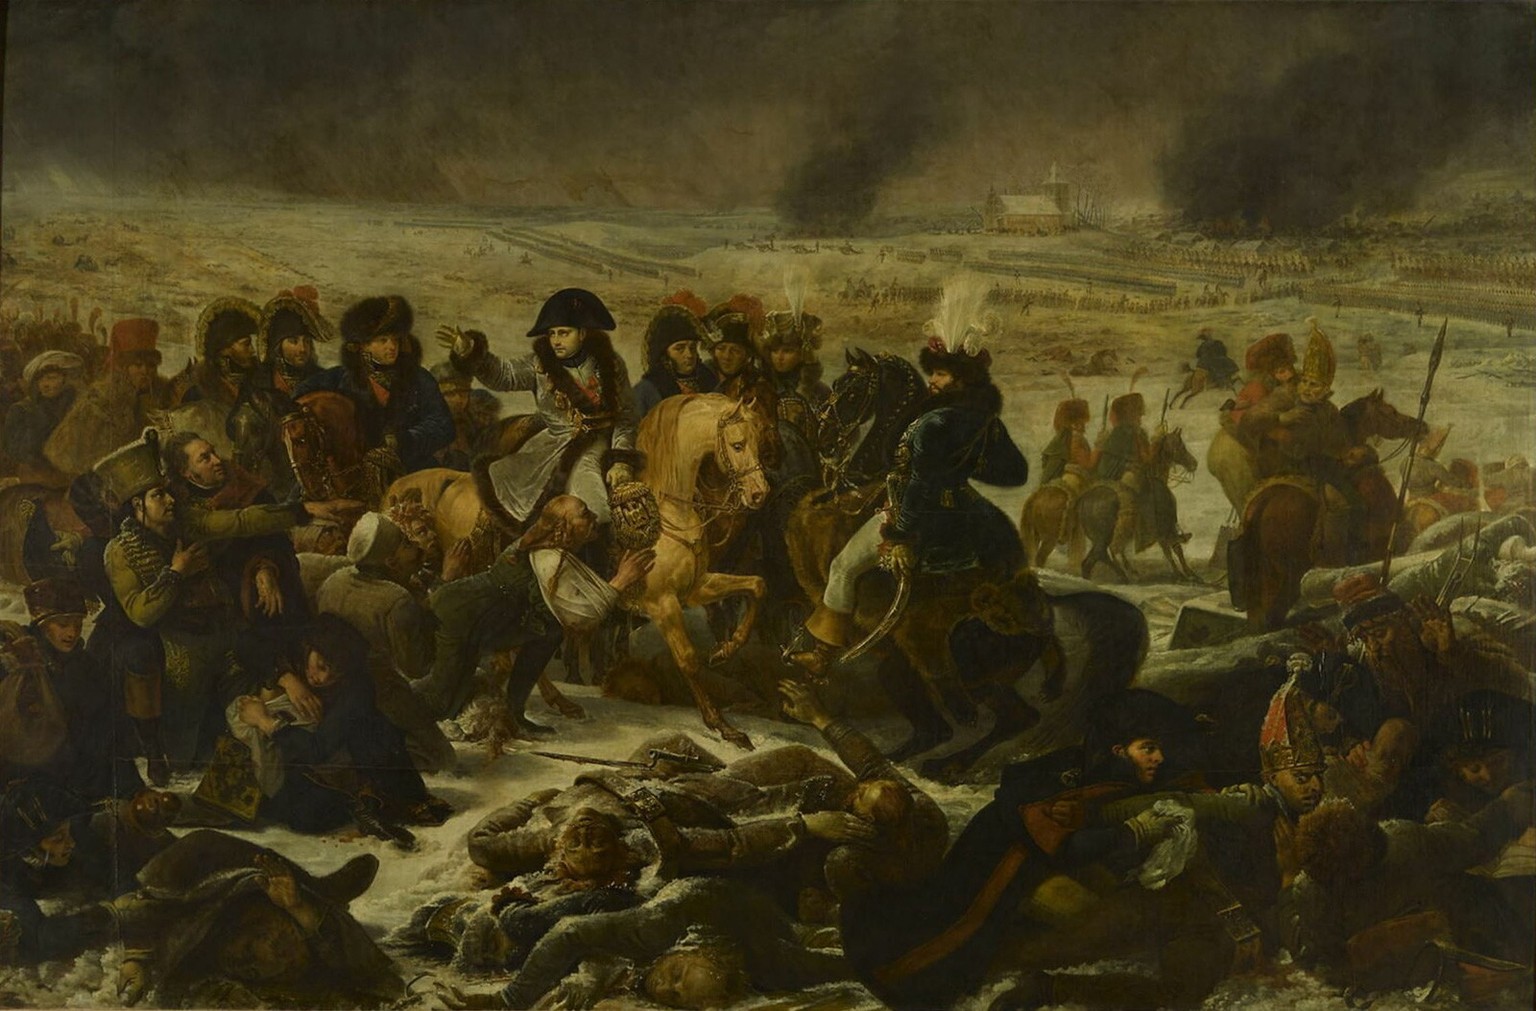 Napoléon sur le champ de bataille d’Eylau, par Antoine-Jean Gros, 1808.
https://collections.louvre.fr/en/ark:/53355/cl010066486